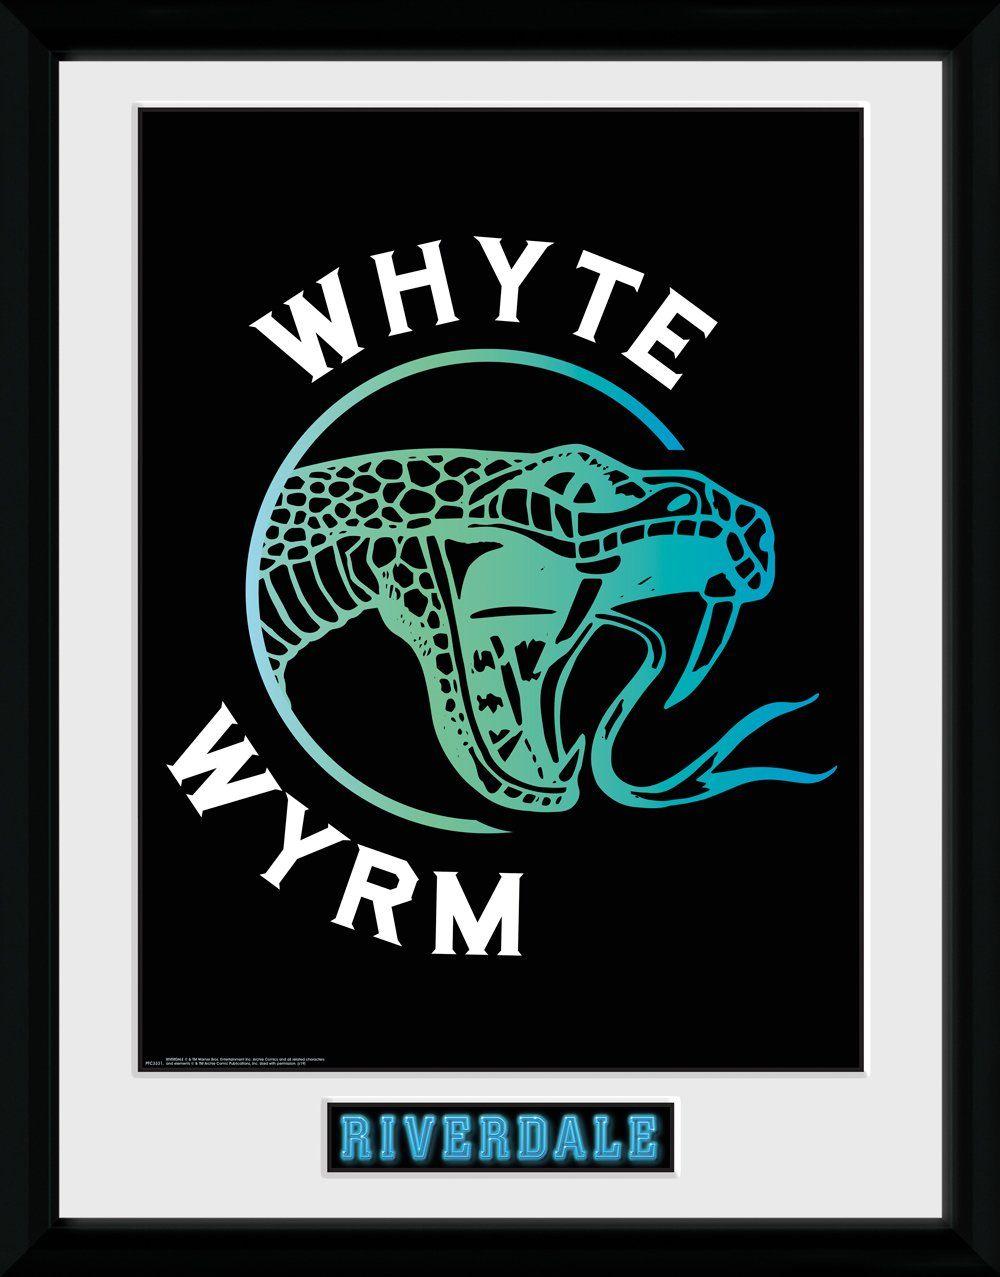 Wyrm Logo - Pfc3331-riverdale-whyte-wyrm